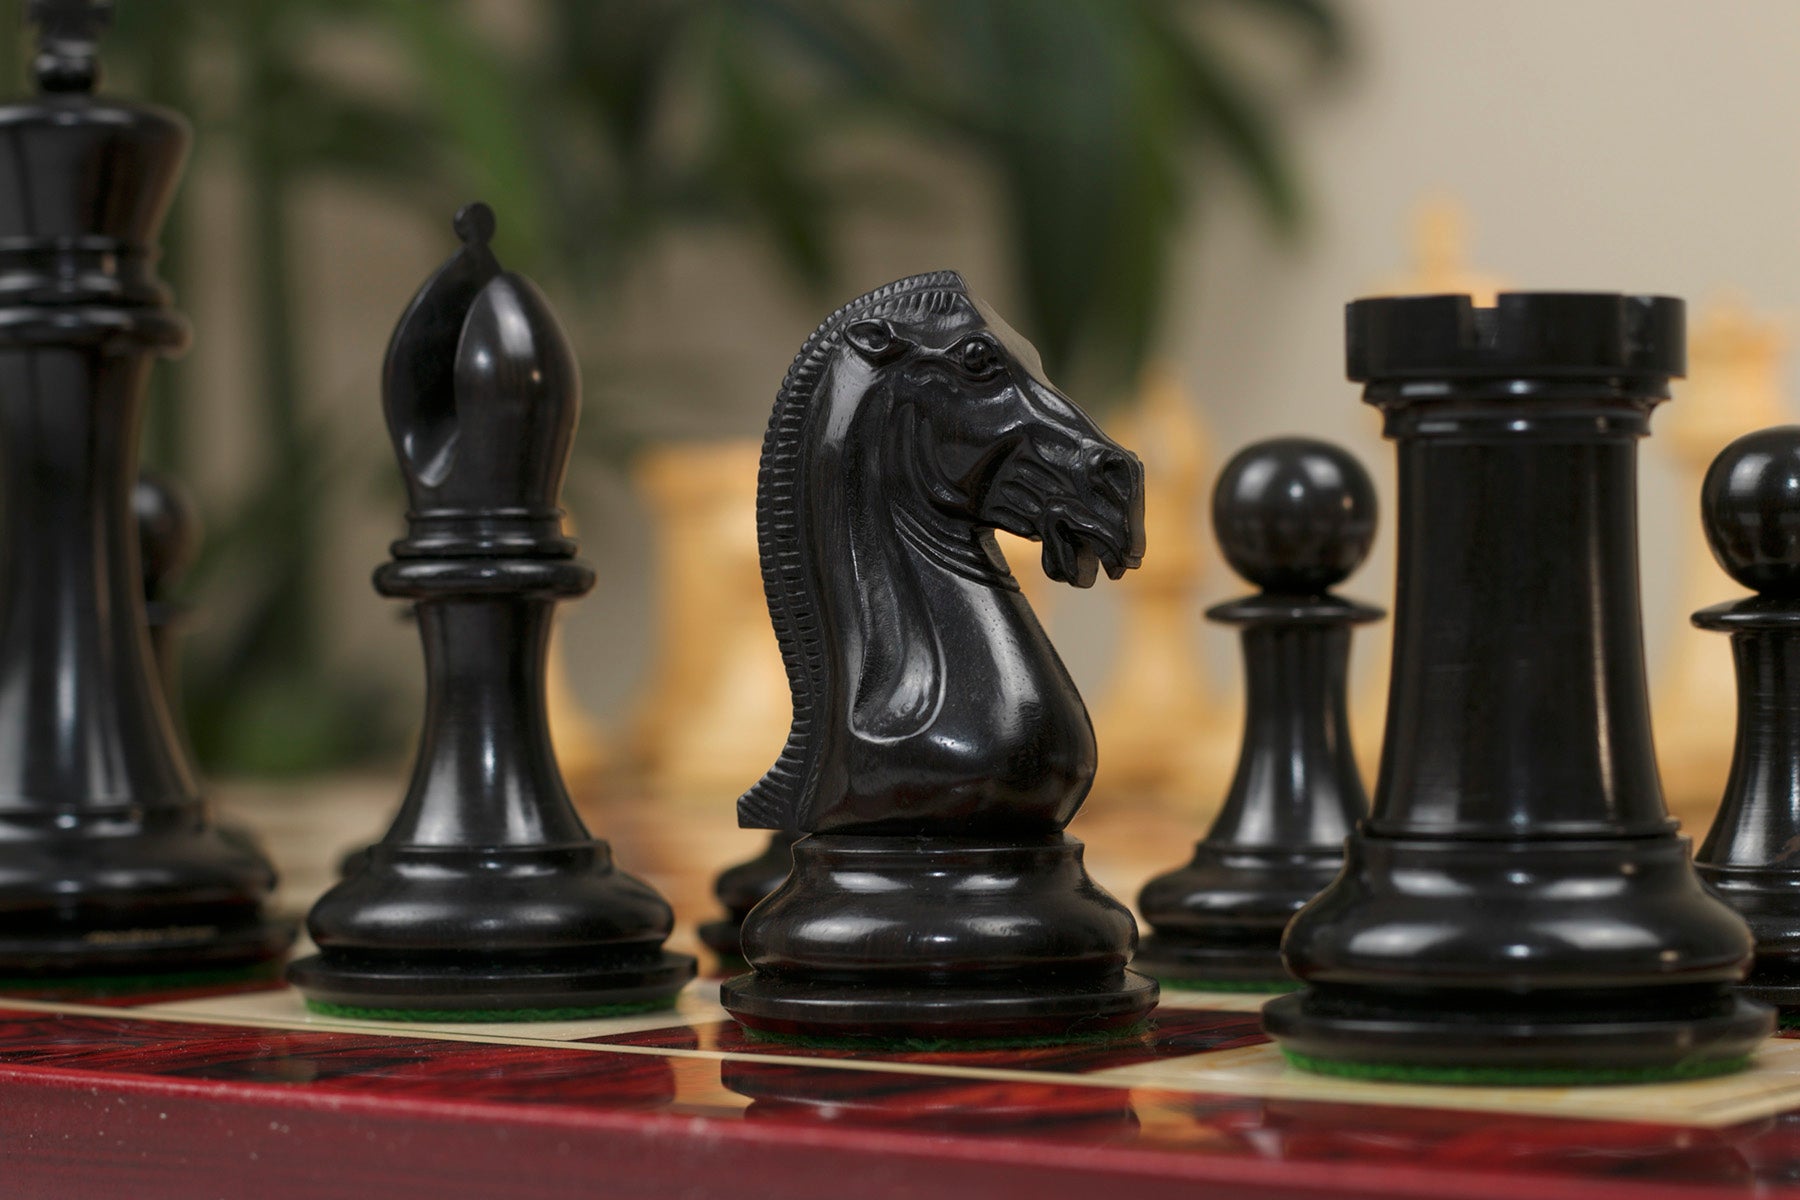 Selene Imperial Staunton Chessmen - www.